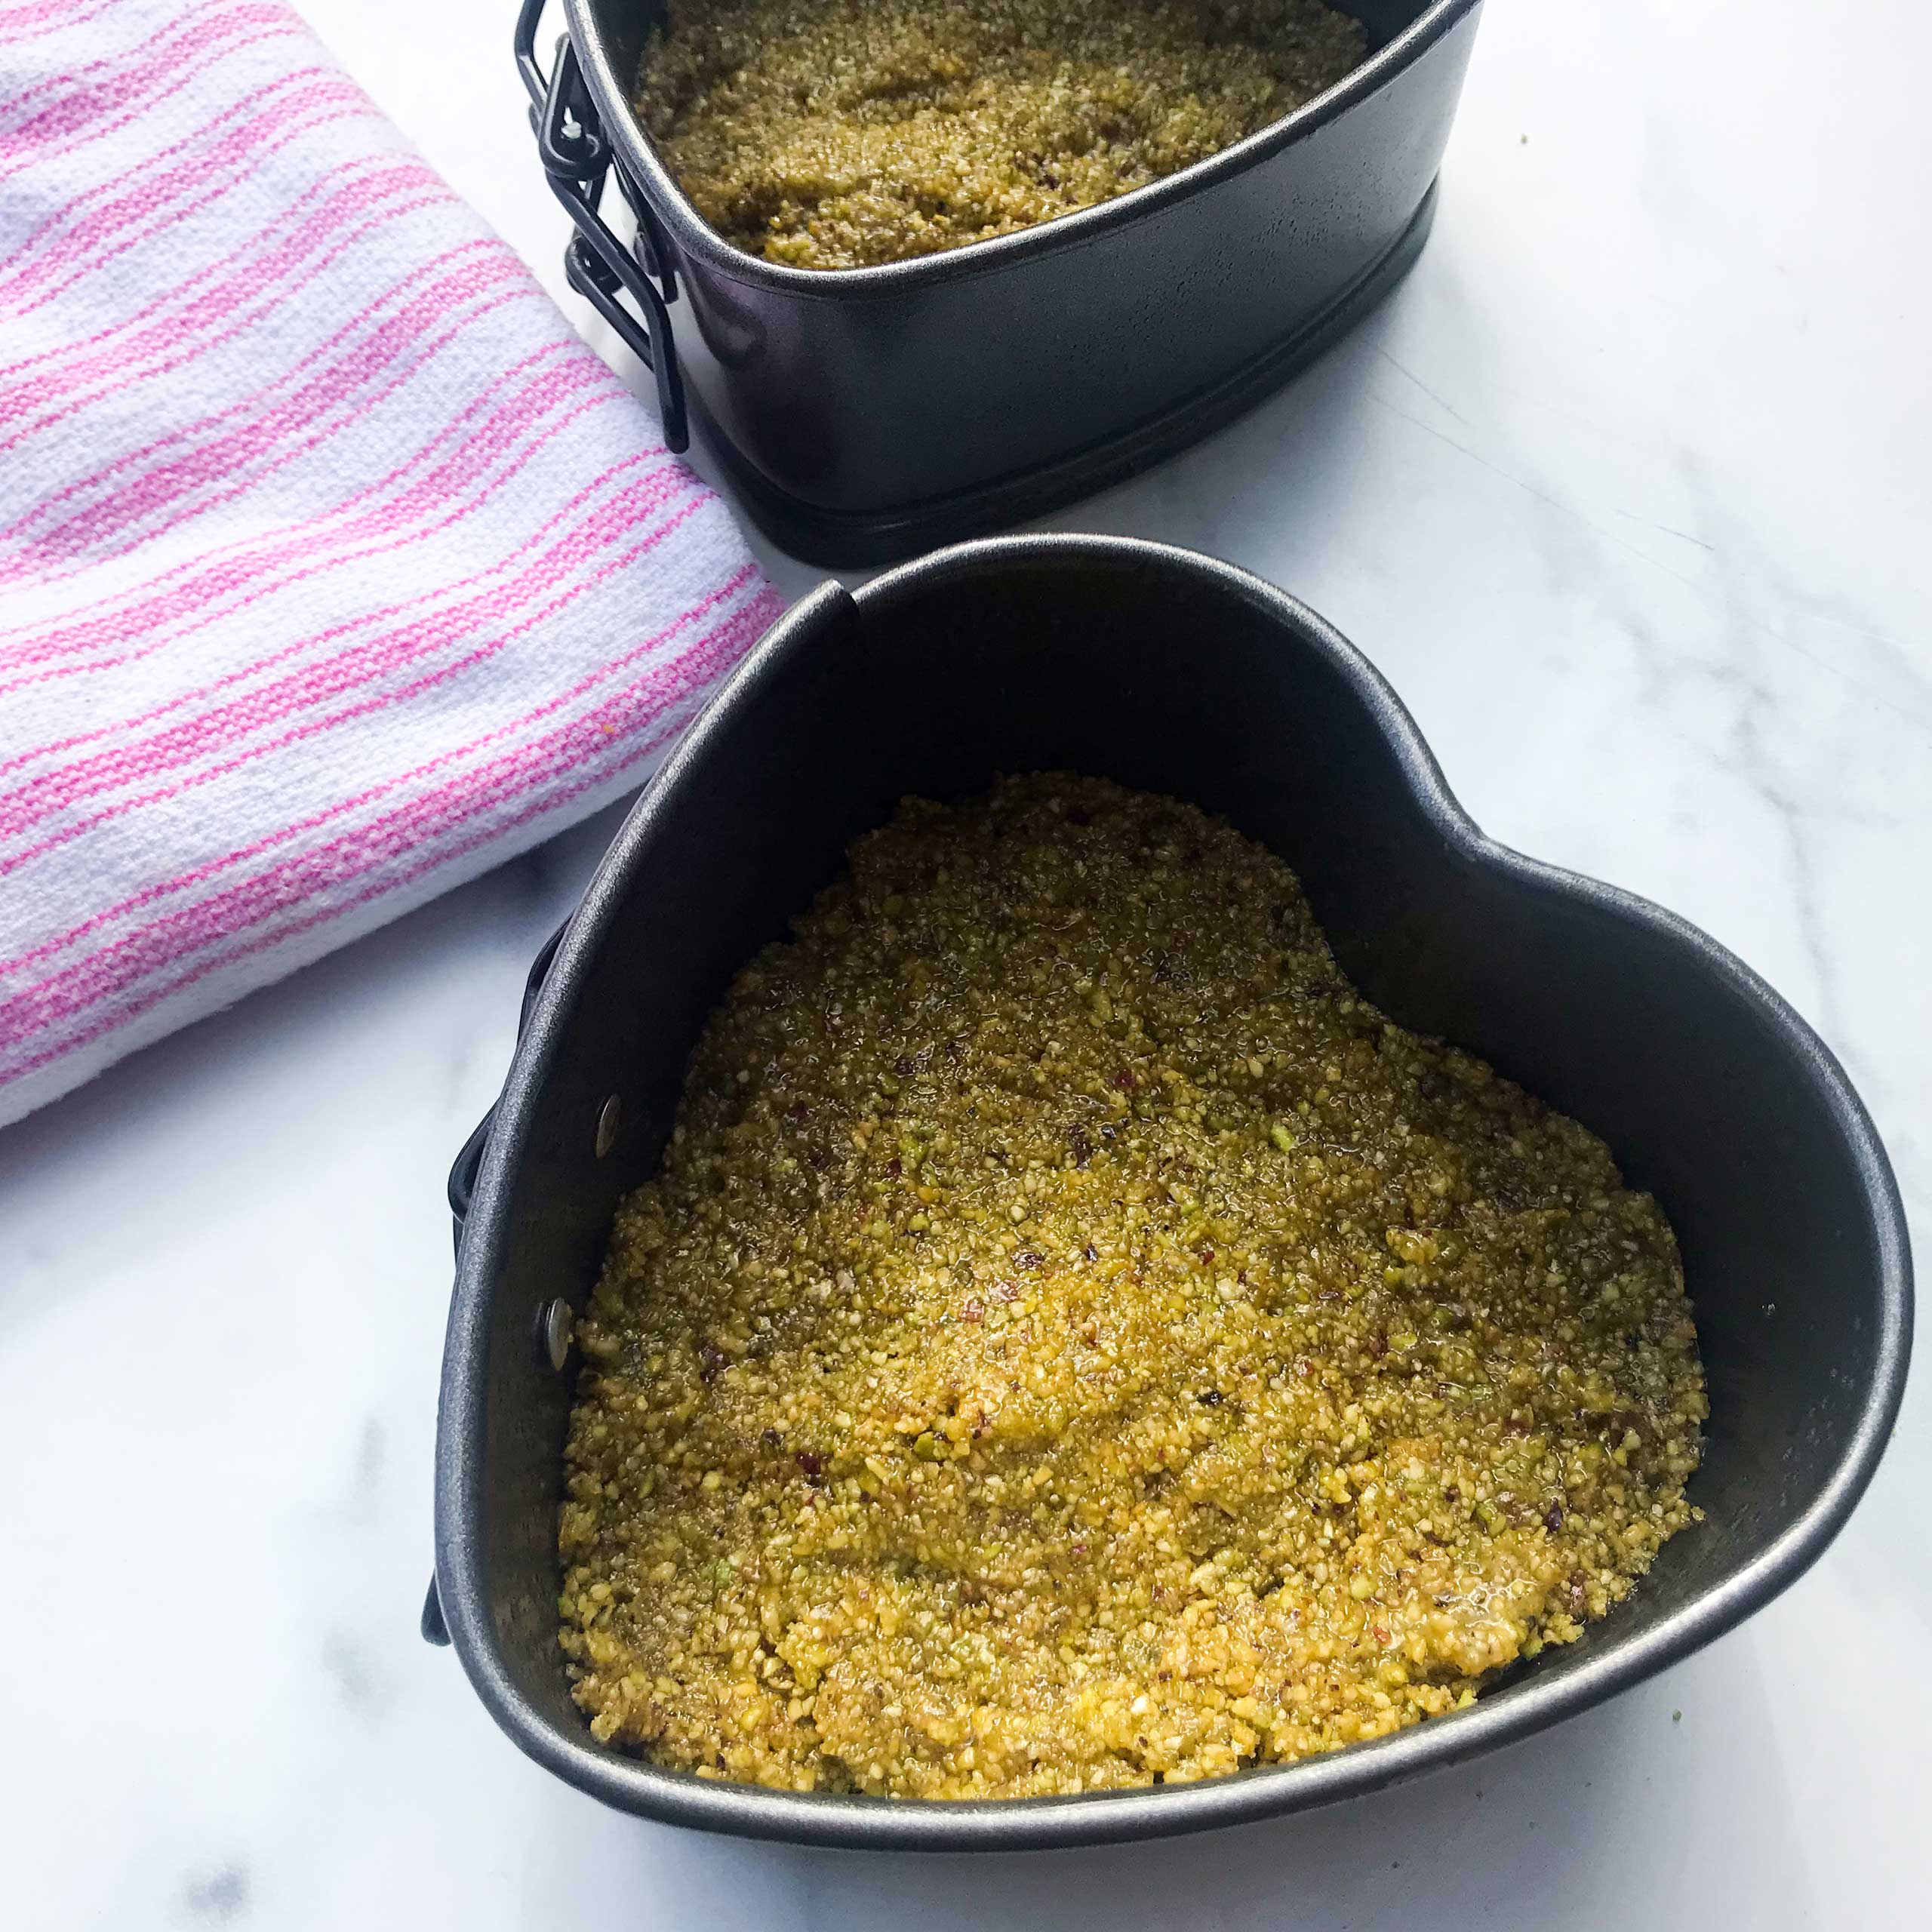 pistachio crust pressed into pans.